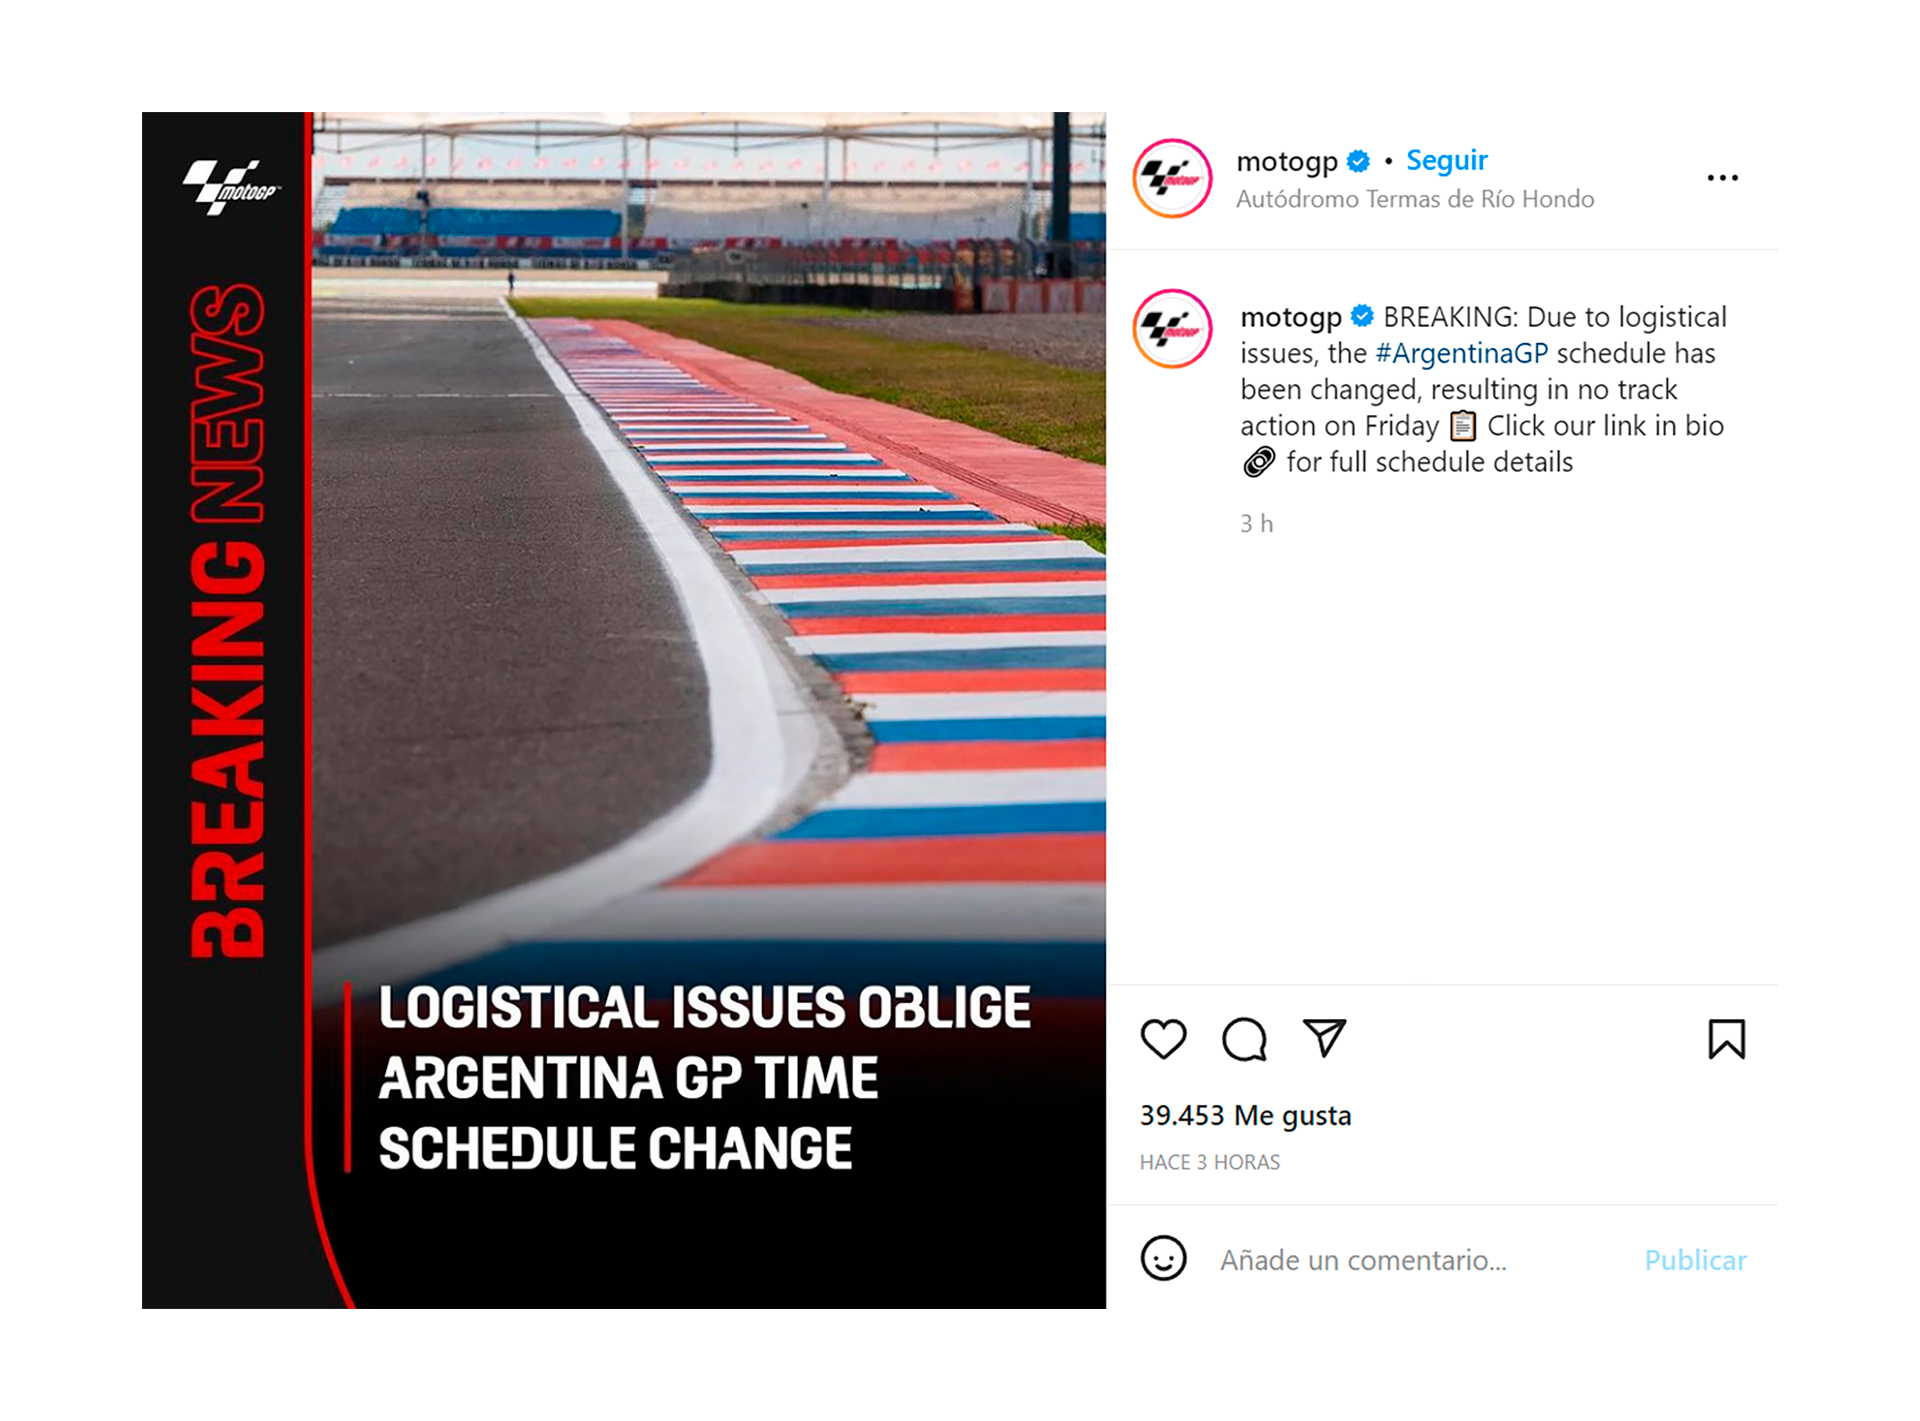 El posteo del MotoGP con el anuncio del cambio en el cronograma